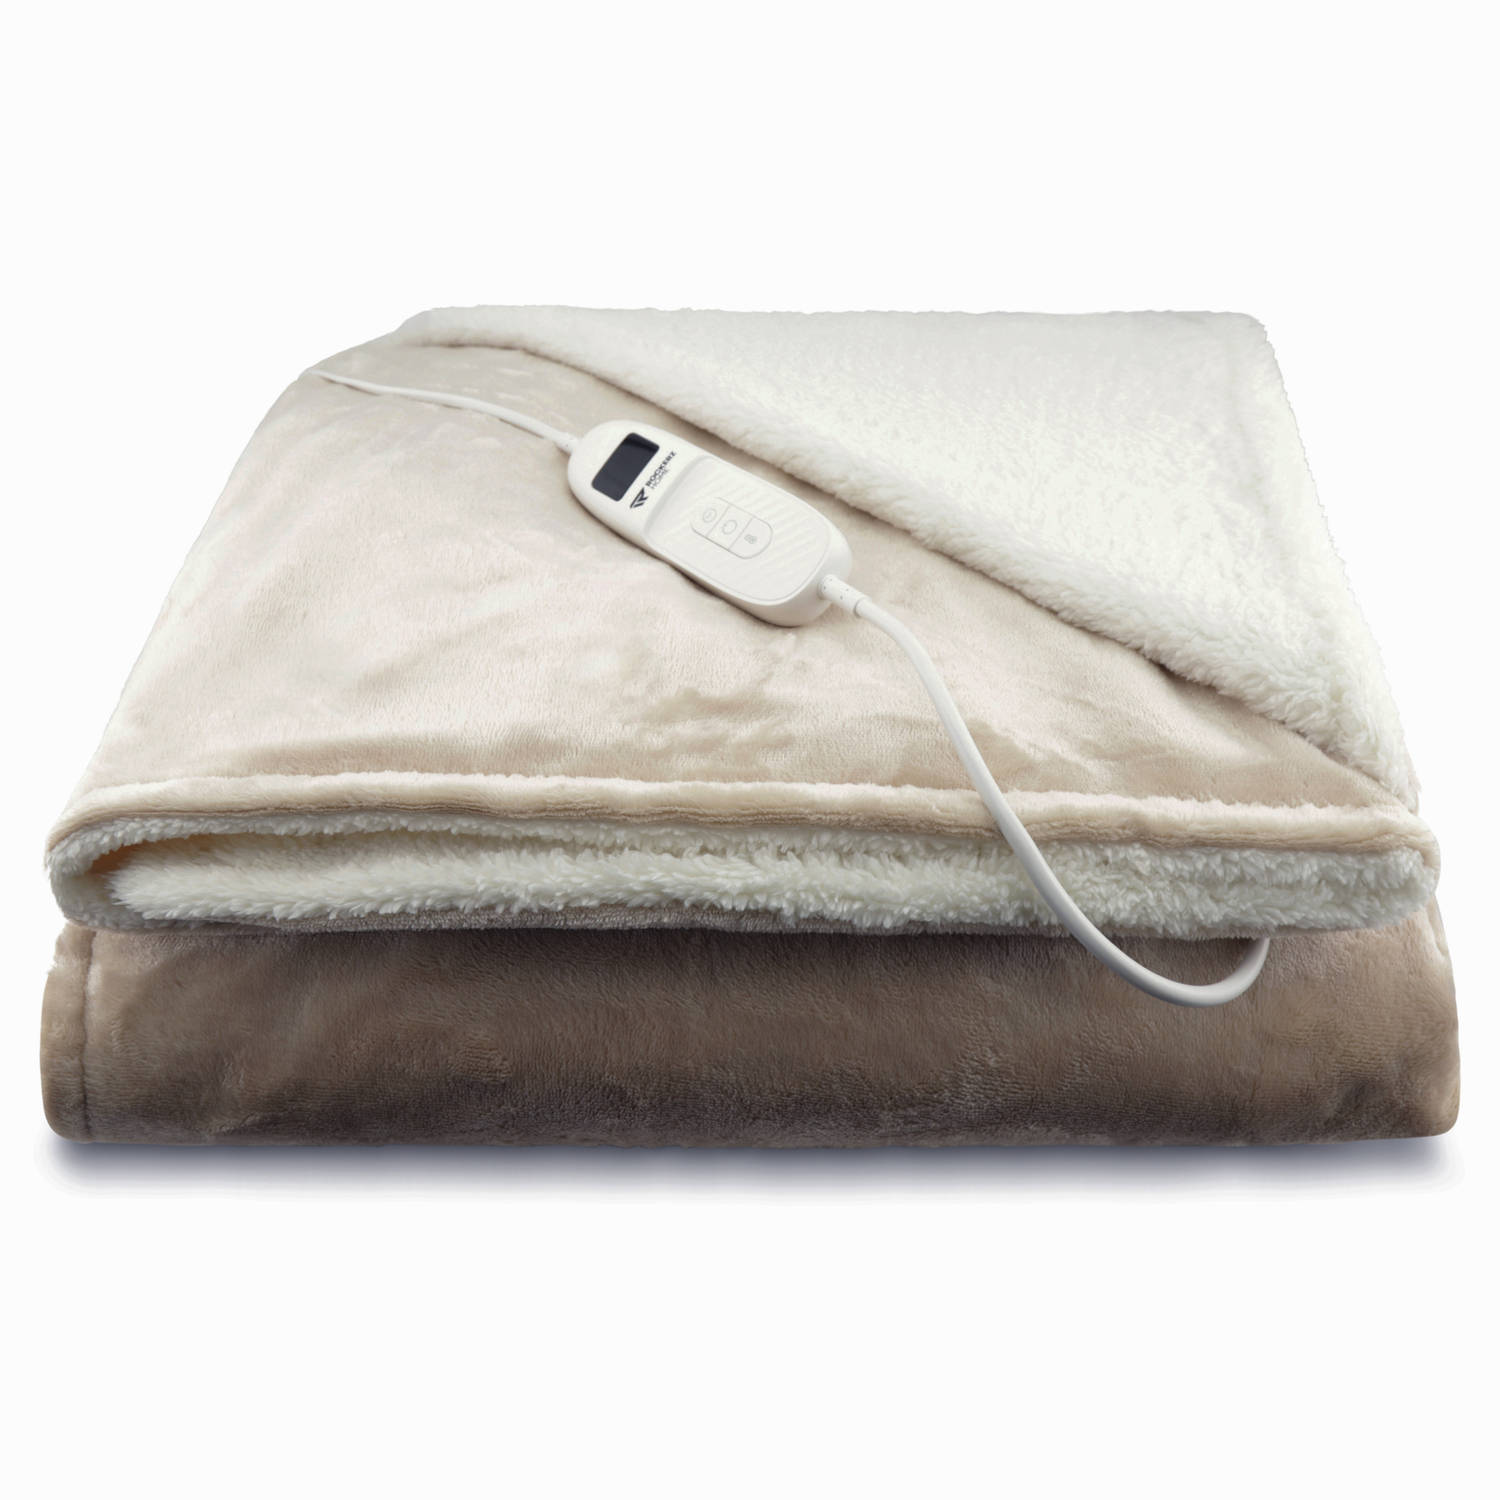 Elektrische deken - Dé musthave voor de koude dagen - Elektrische bovendeken - formaat (160x130 cm) 1 Persoons - Automatisch uitschakelen tussen 1-12 uur - Energiezuinig - XL snoer